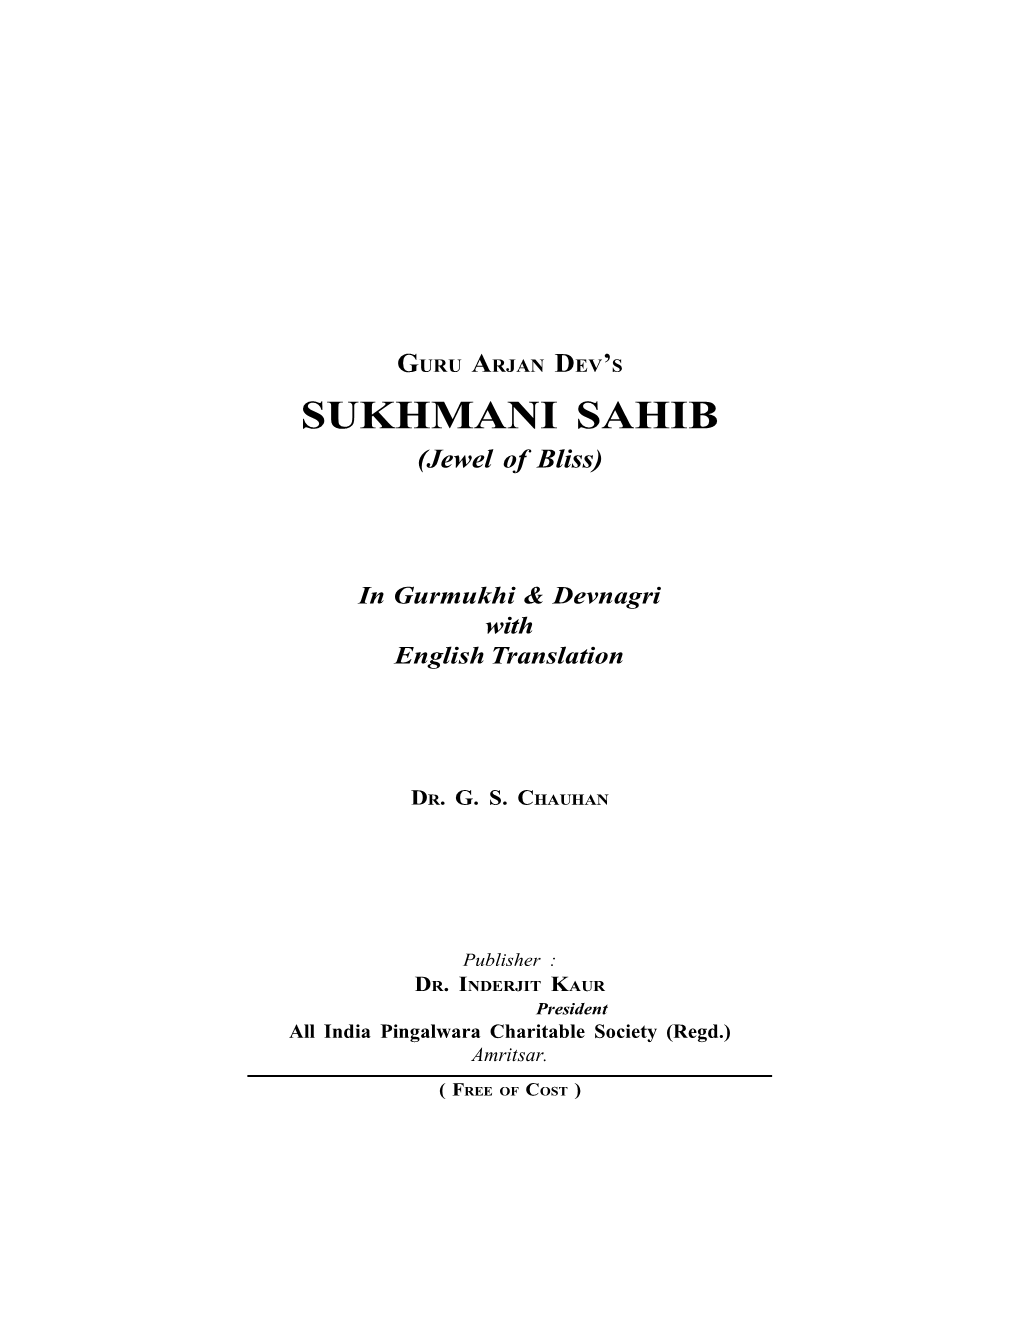 SUKHMANI SAHIB (Jewel of Bliss)